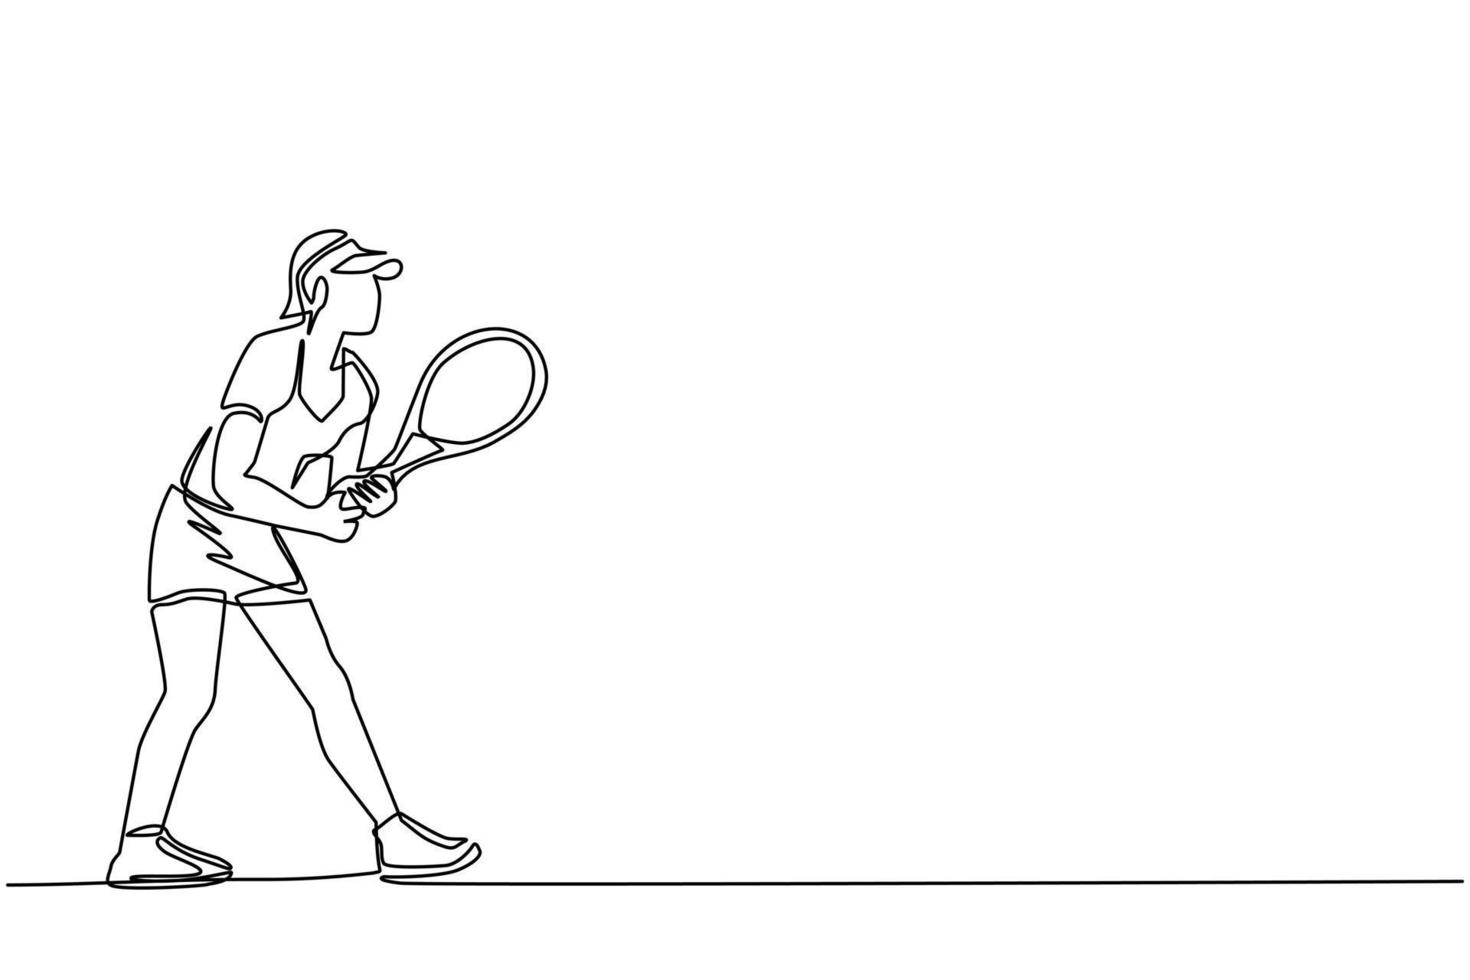 Single One Line Drawing Tennisspielerin mit einem Schläger in der Hand. Tennisspielerinnen spielen mit Schläger auf dem Platz. Meisterschaft, Ausbildung. ununterbrochene Linie zeichnen grafische Vektorillustration des Designs vektor